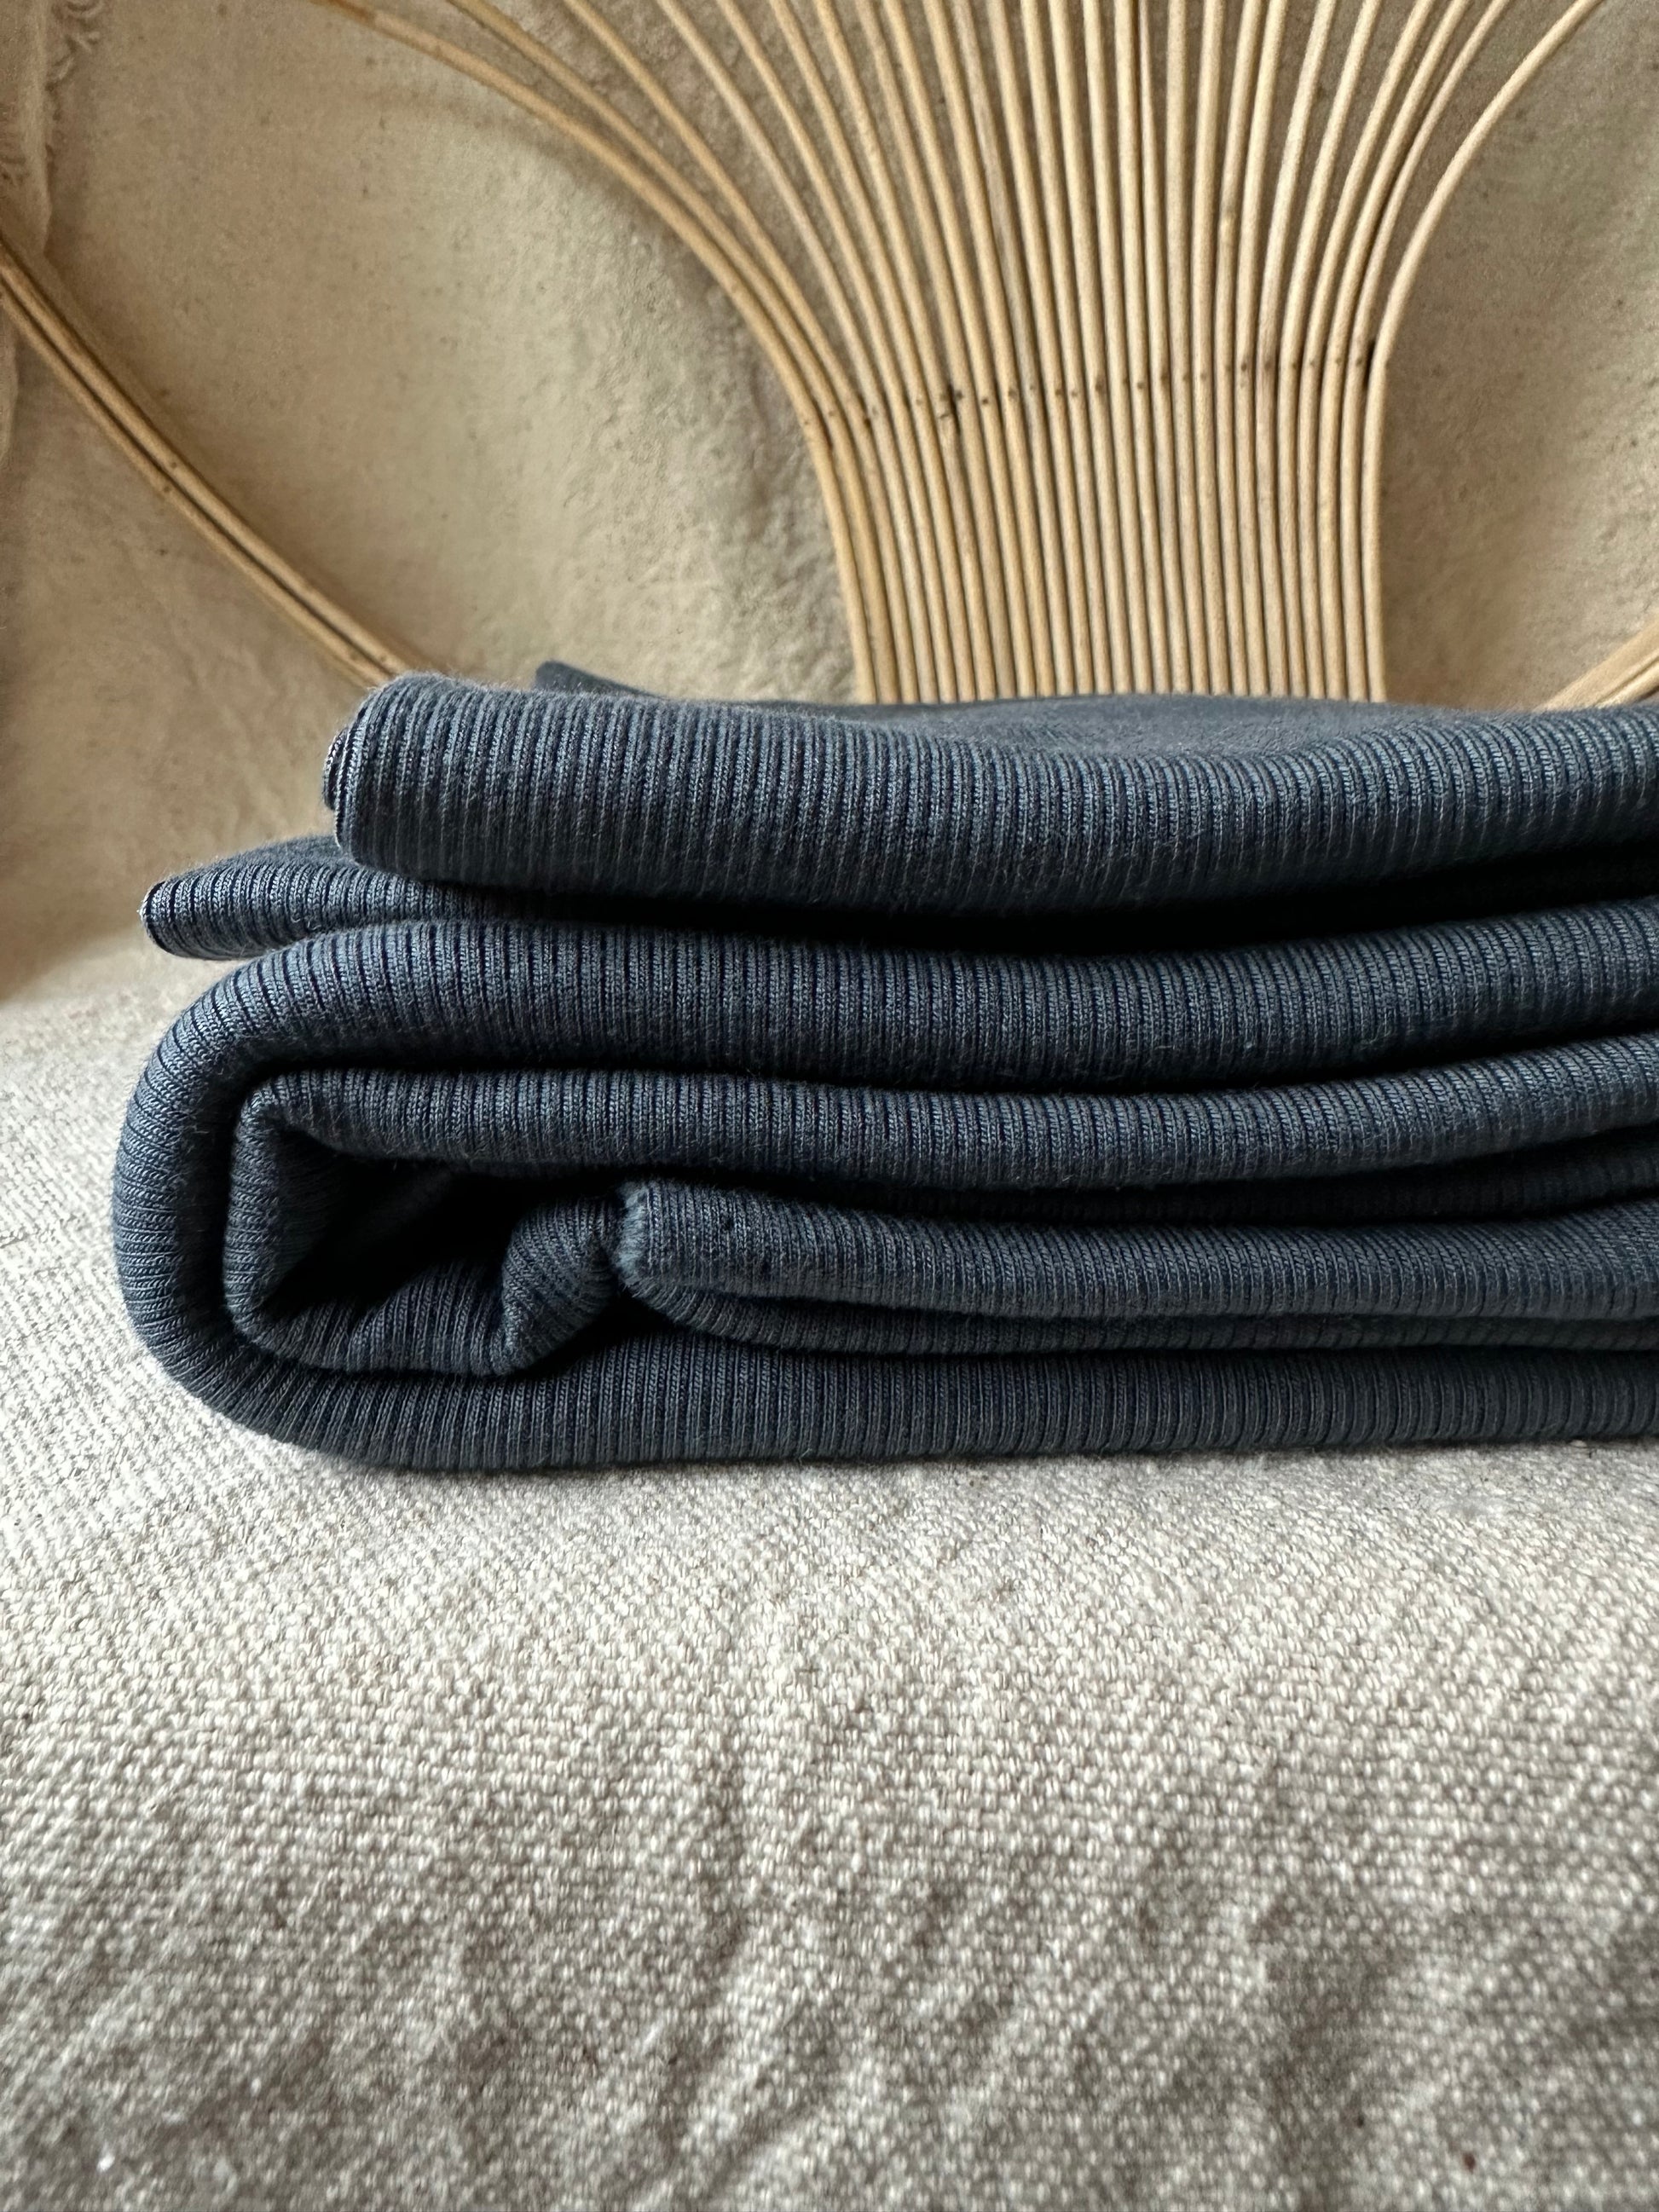 Rib knits – Our Social Fabric